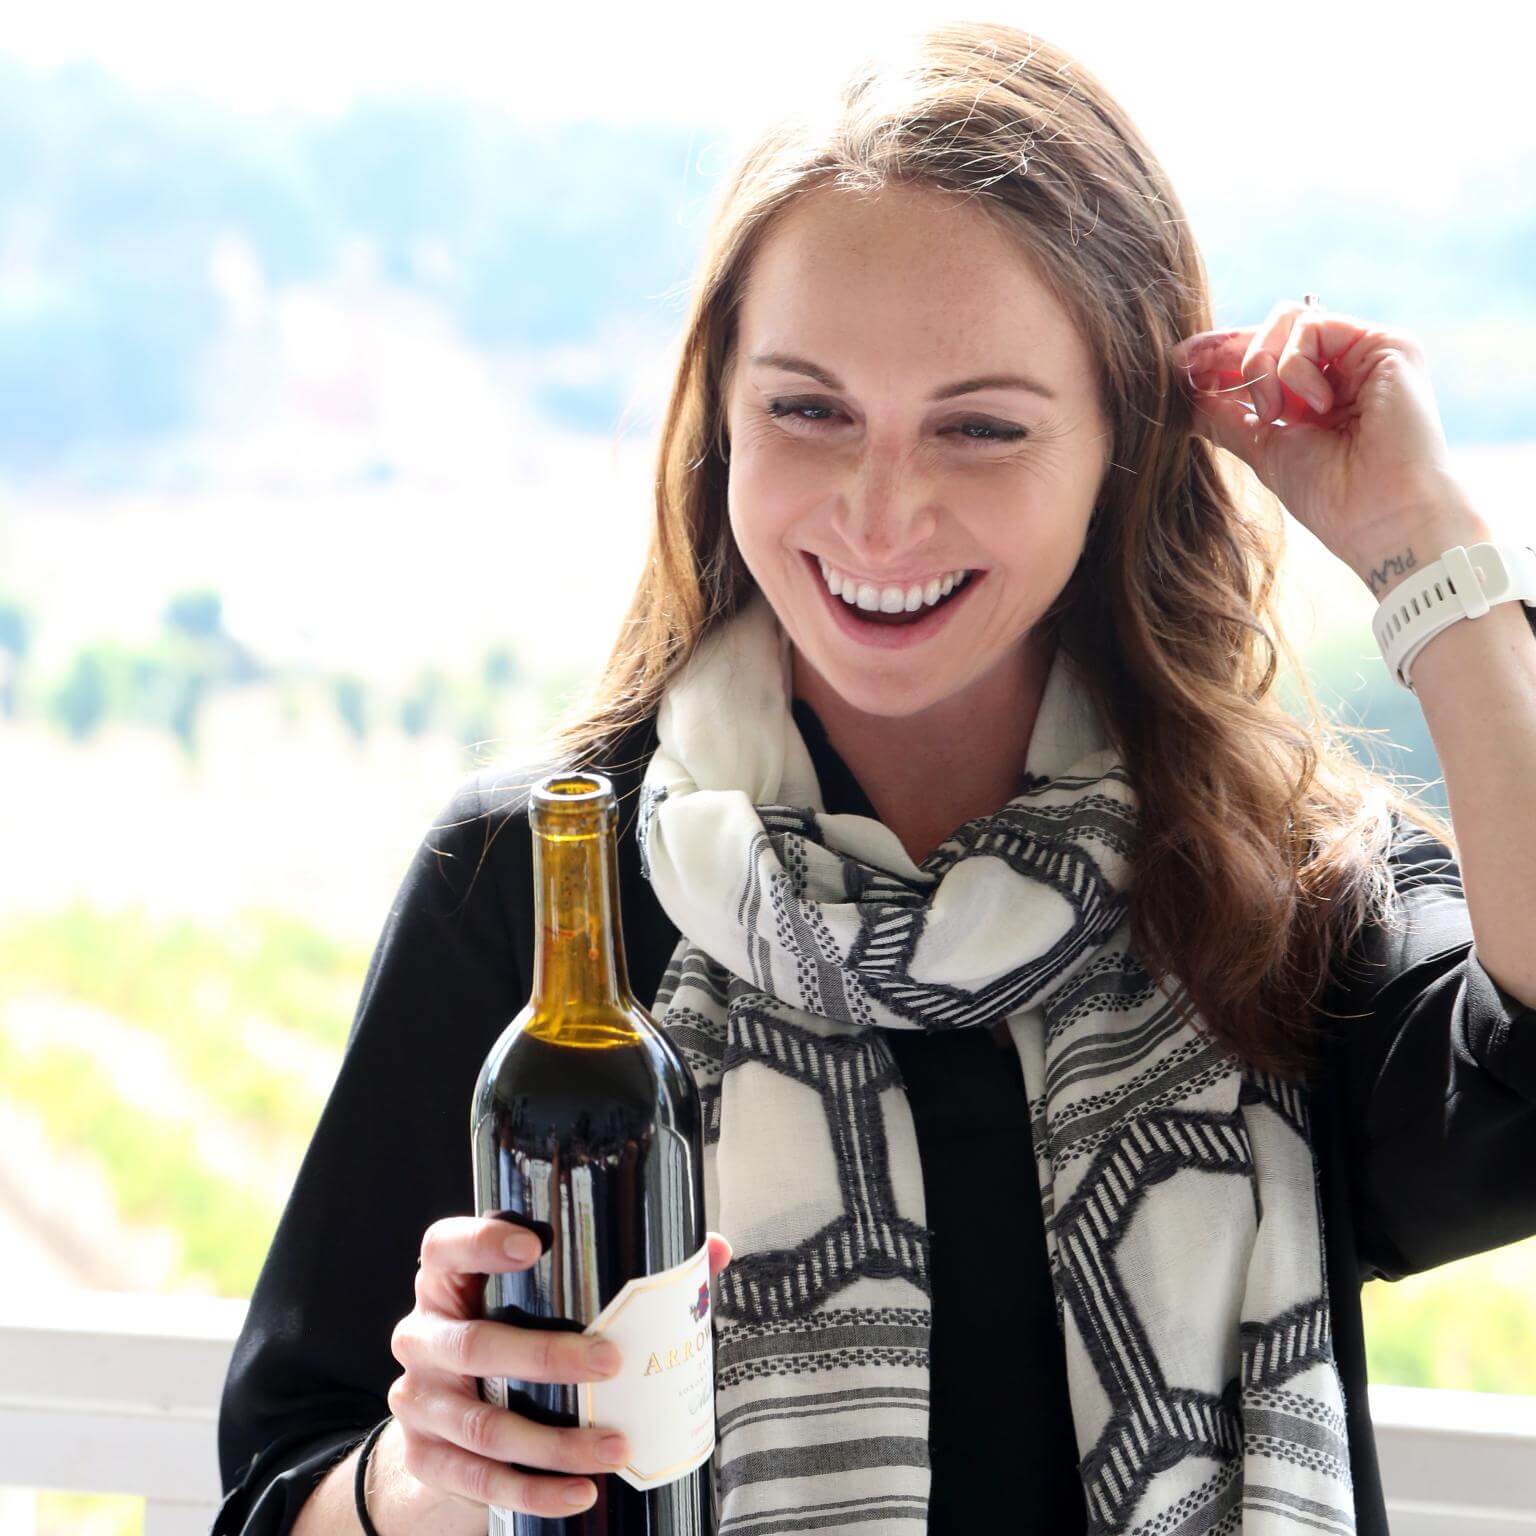 Arrowood Winemaker, Kristina Shideler, holding a bottle of Arrowood Vineyard's wine and smiling.